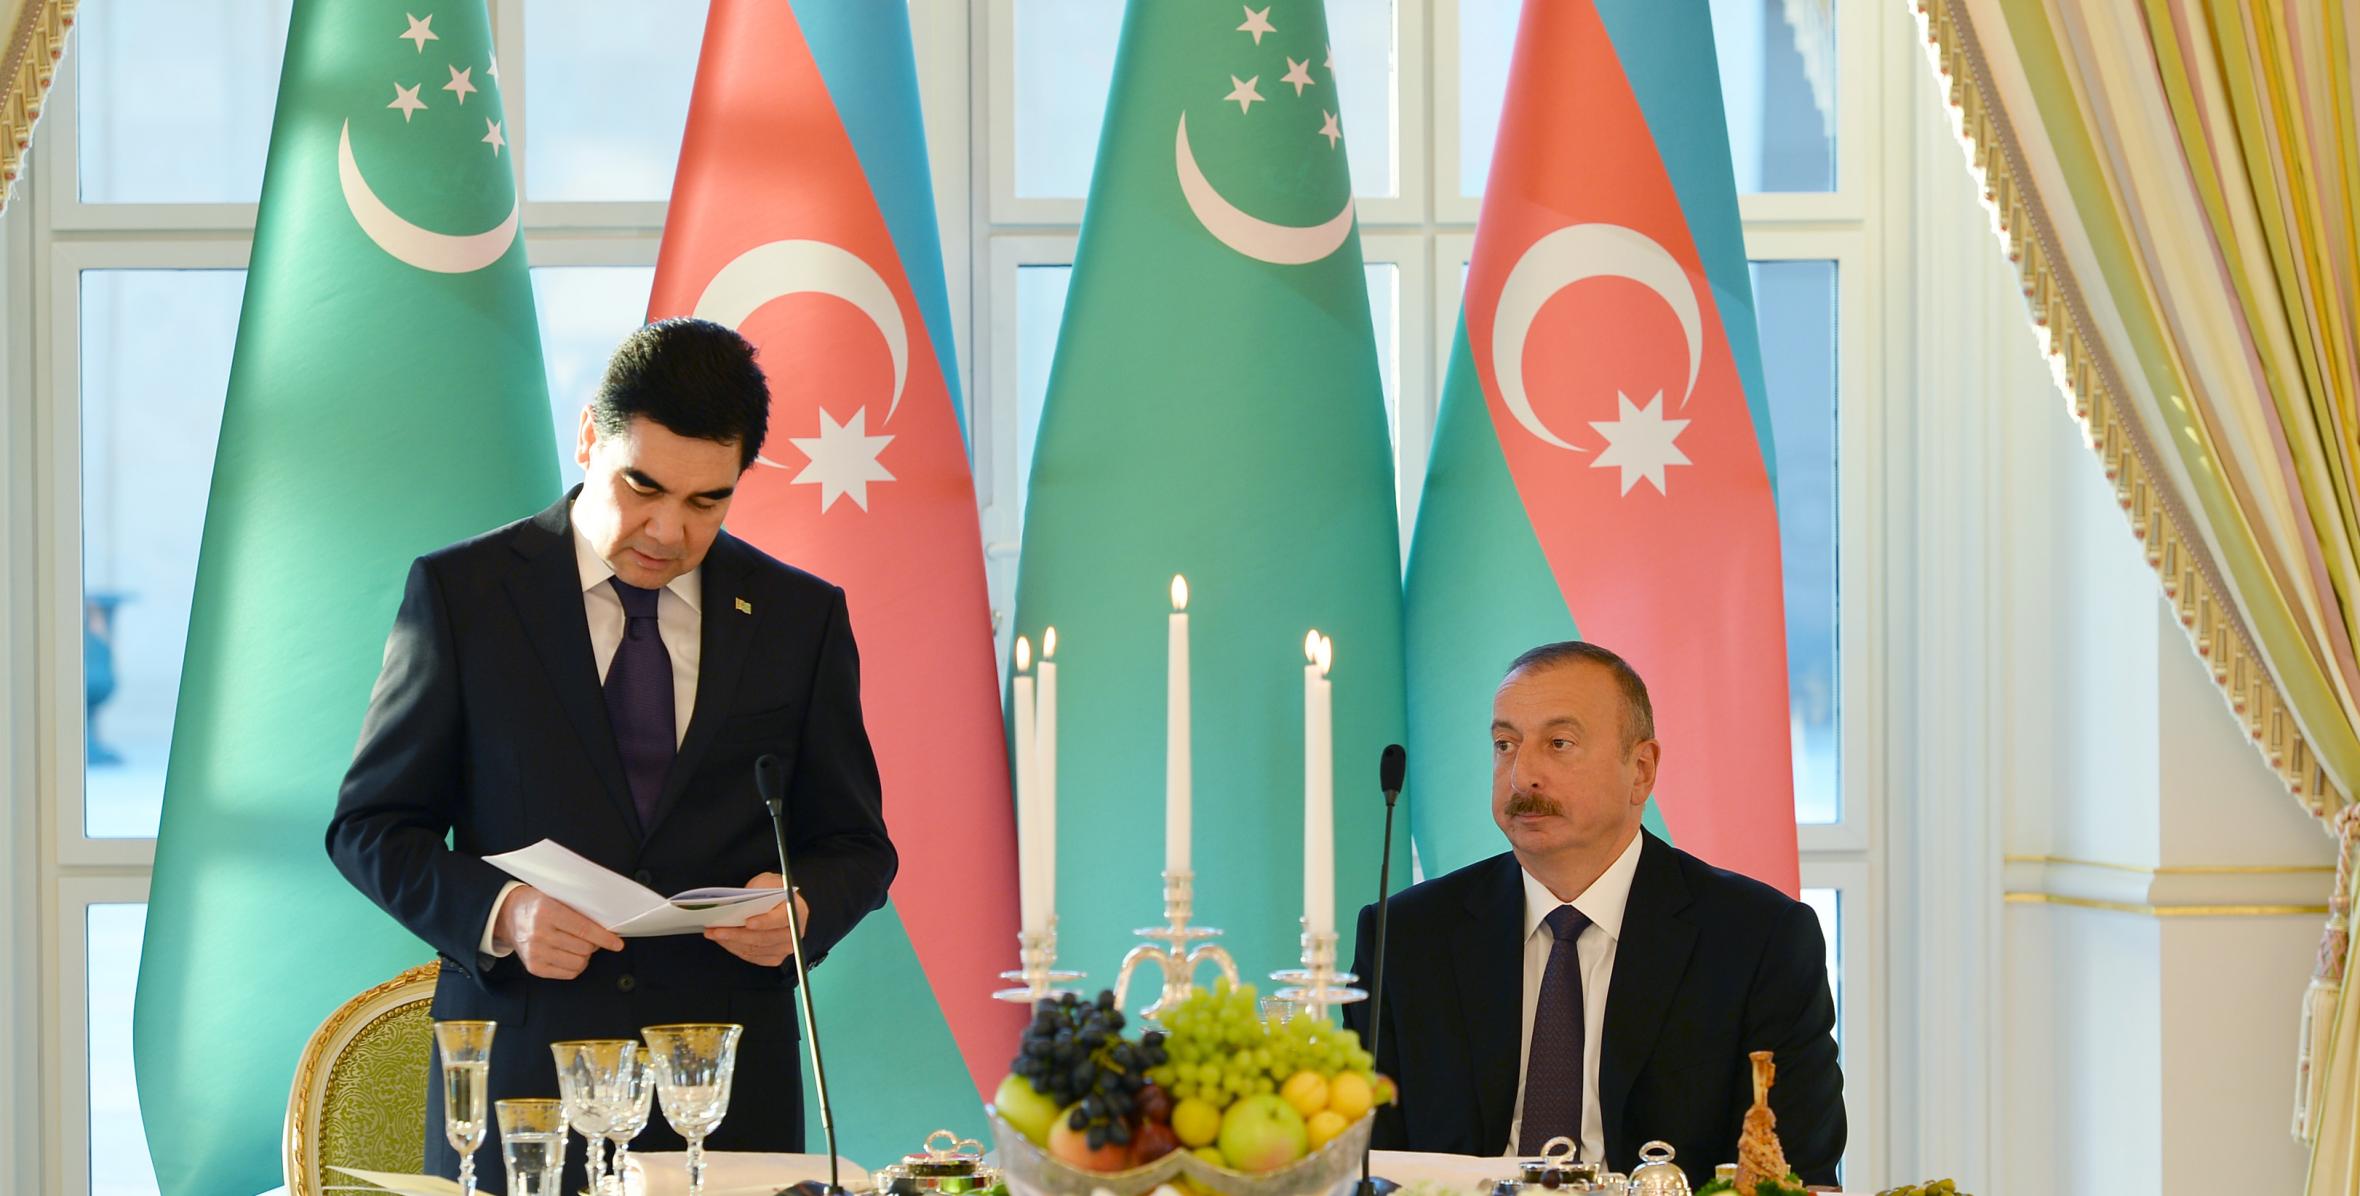 От имени Ильхама Алиева был дан официальный прием в честь Президента Туркменистана Гурбангулы Бердымухамедова